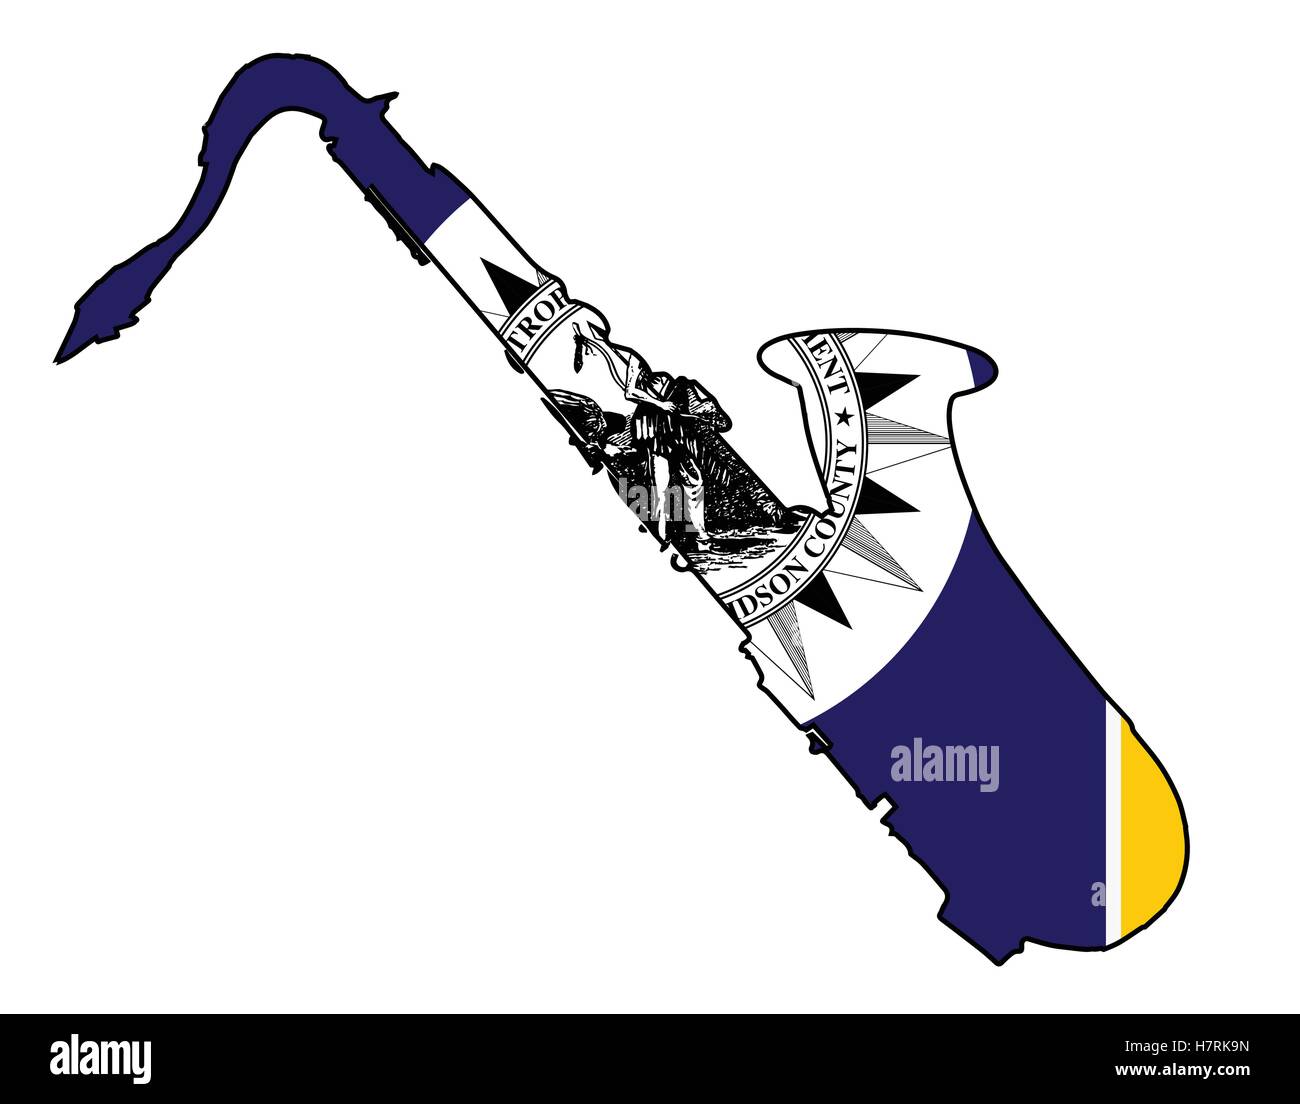 Wappen der Stadt Nashville USA gesetzt unter ein Saxophon-Gliederung-silhouette Stock Vektor